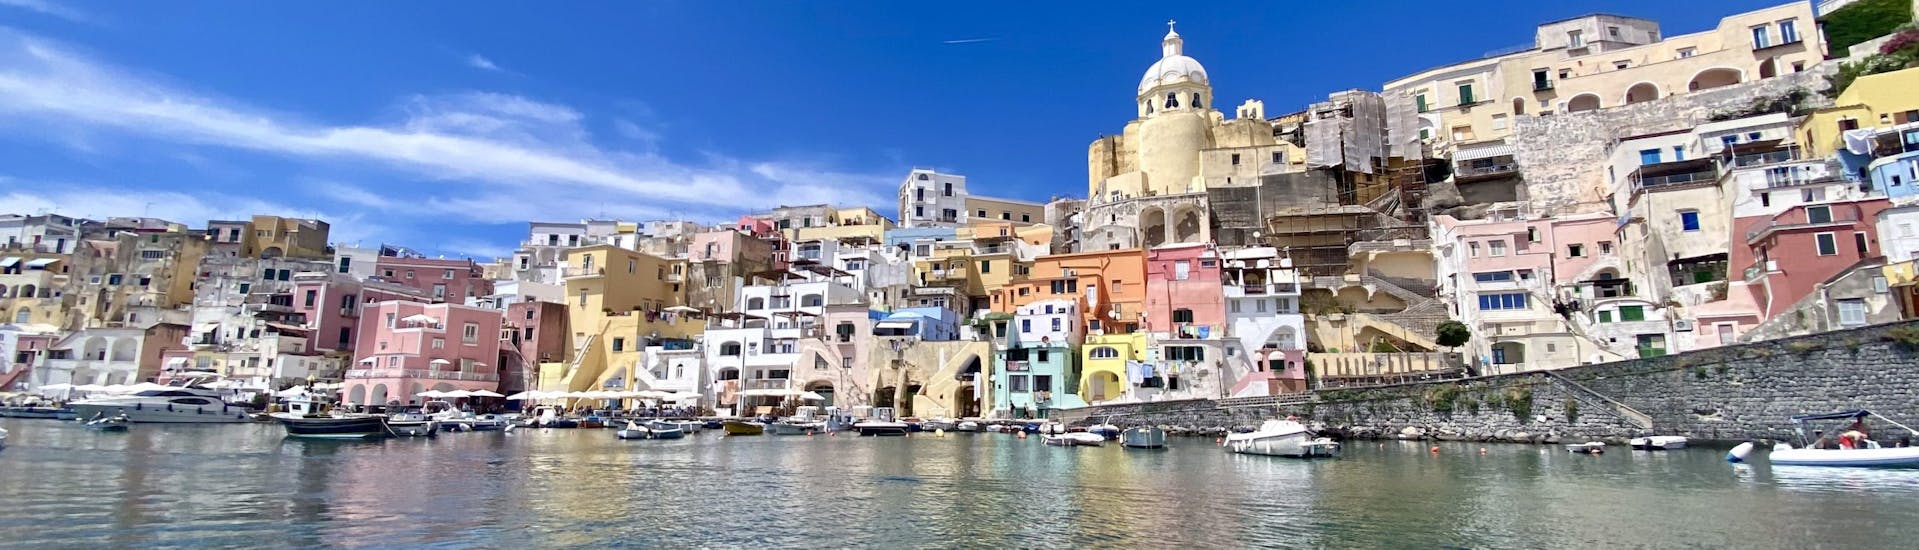 Blick auf das Meer der Bucht von Corricella während der RIB Bootstour von Neapel nach Procida mit Aperitif und Schnorcheln, organisiert von Seaside Napoli.